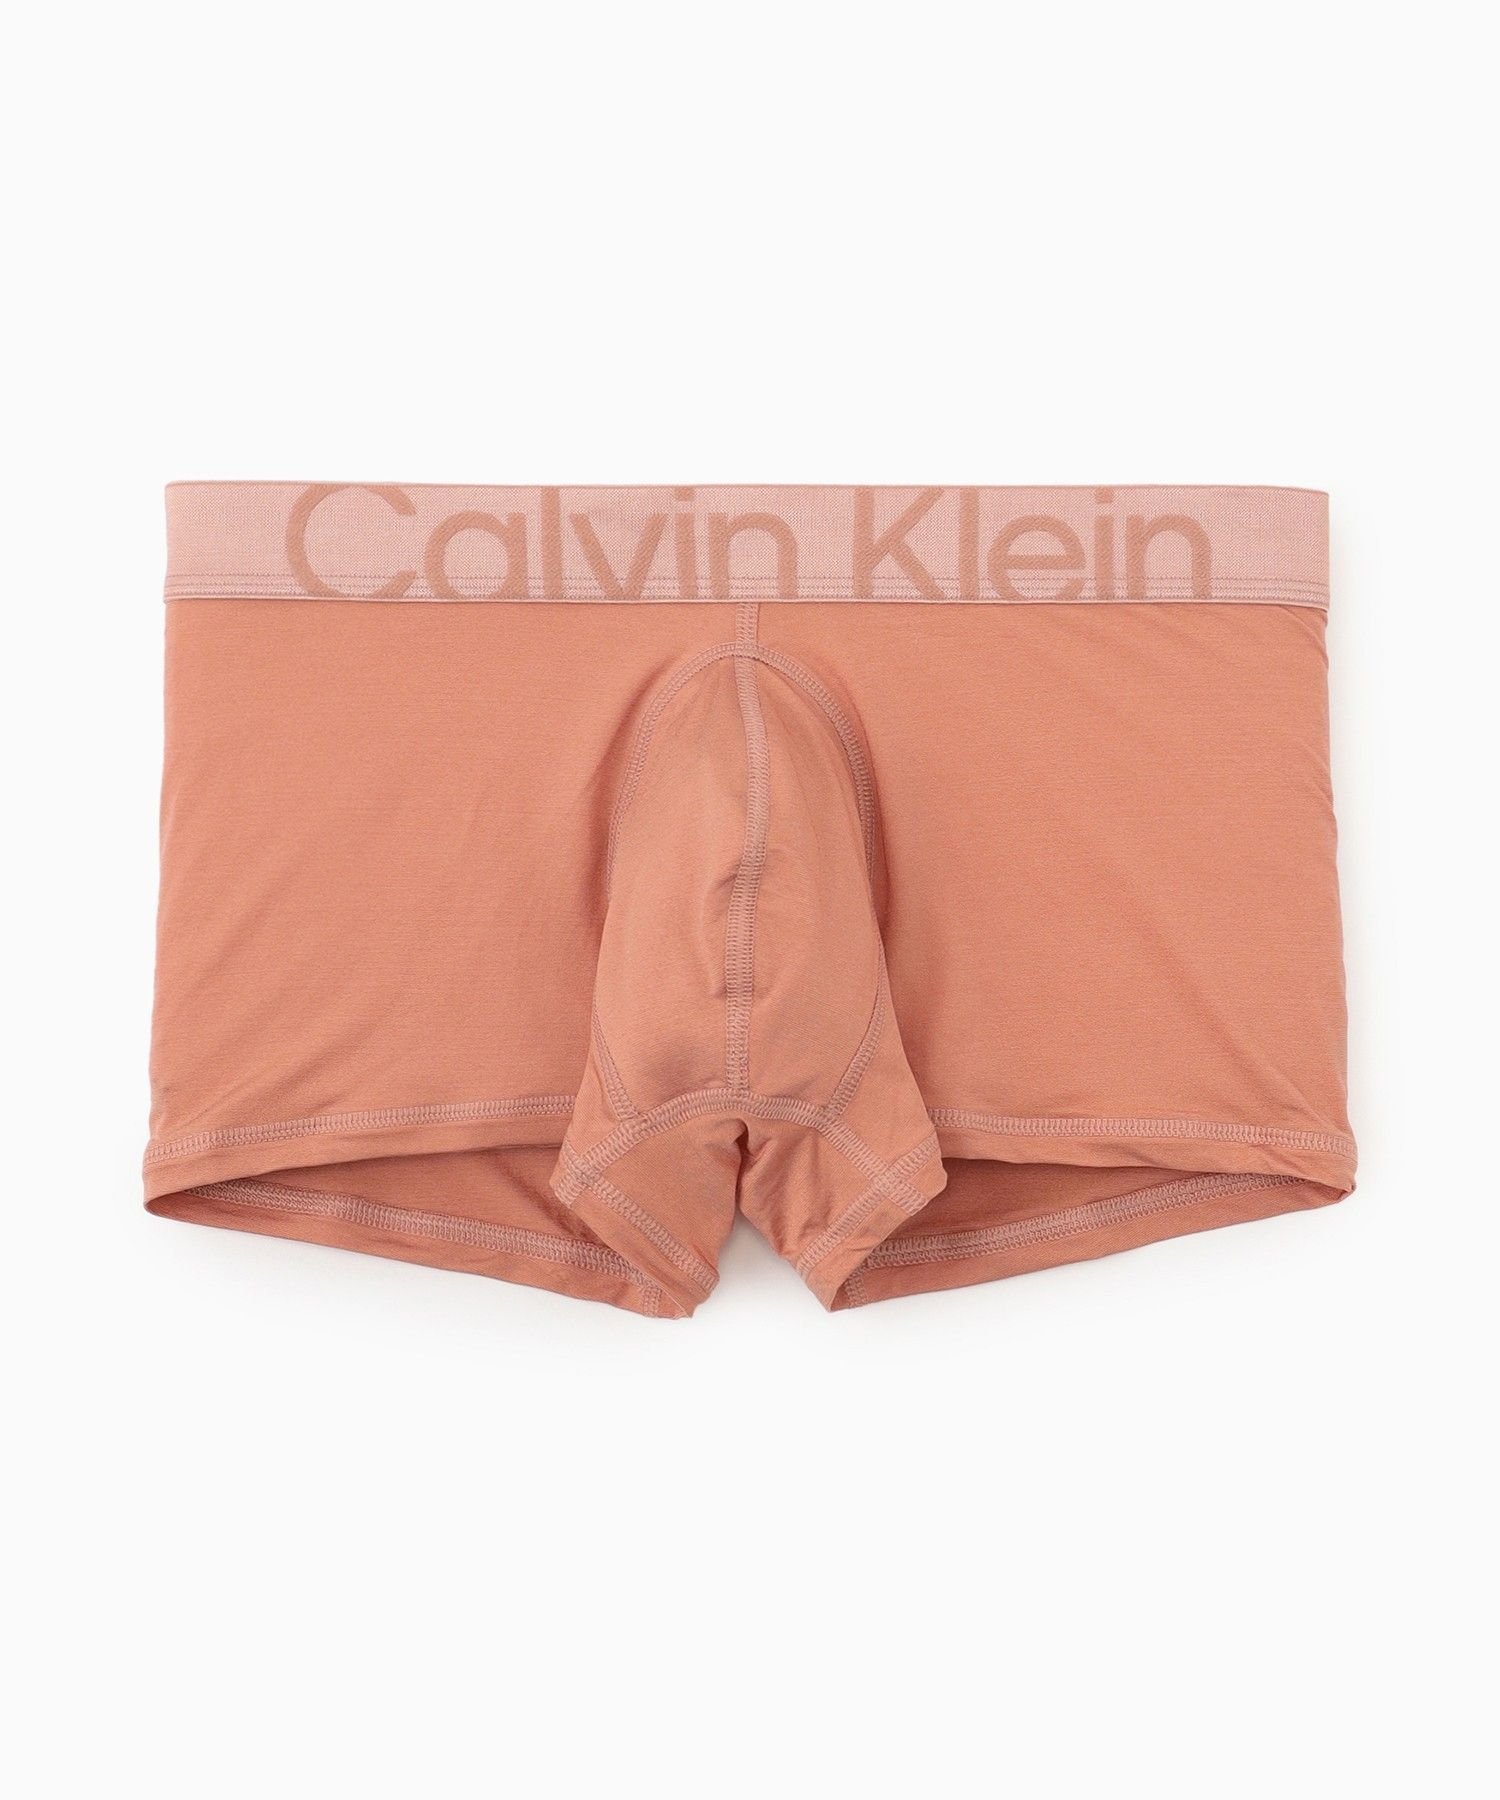 【SALE／40%OFF】Calvin Klein Underwear (M)【公式ショップ】 カルバンクライン ローライズトランクス Calvin Klein Underwear NB3678 カルバン・クライン インナー・ルームウェア ボクサーパンツ・トランクス オレンジ ベージュ